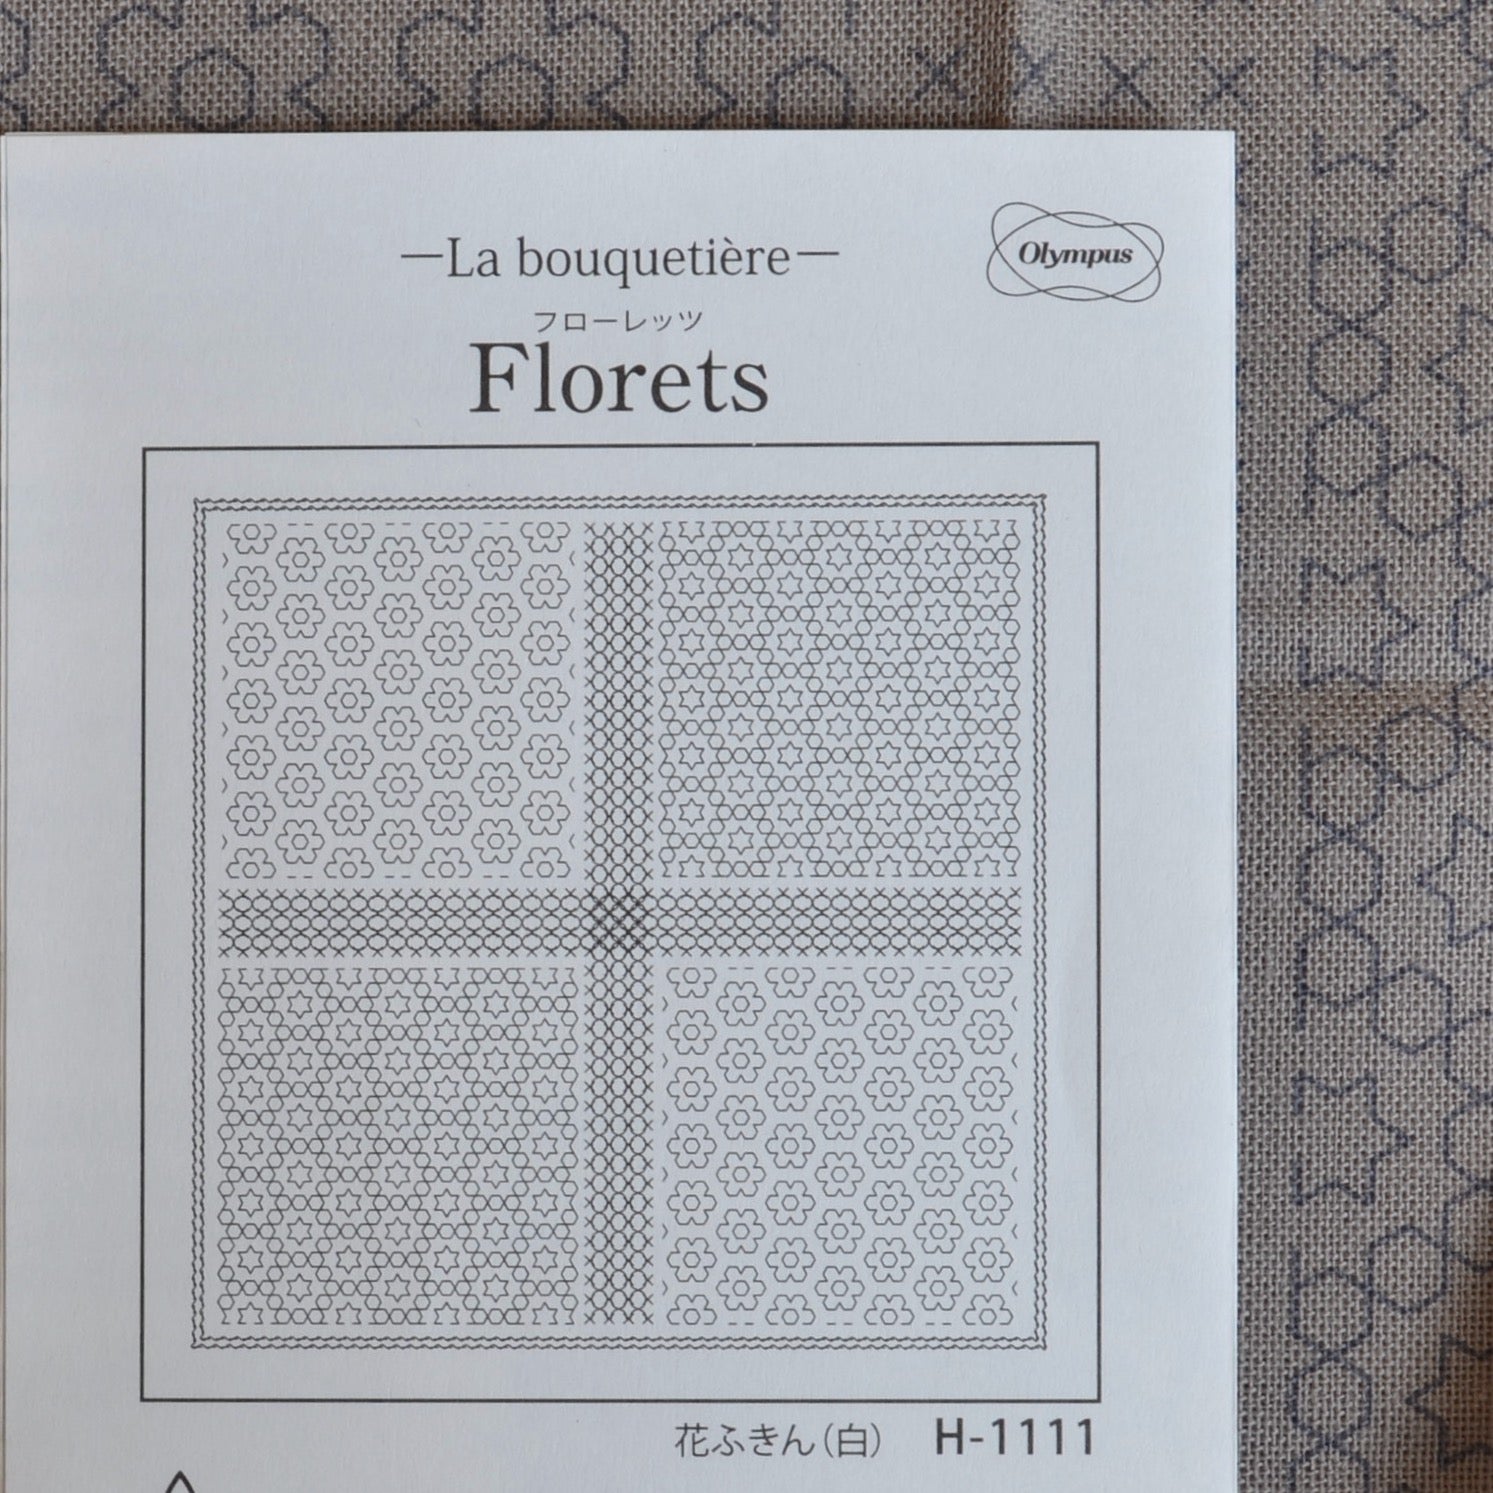 Taupe kit of La bouquetiere Florets